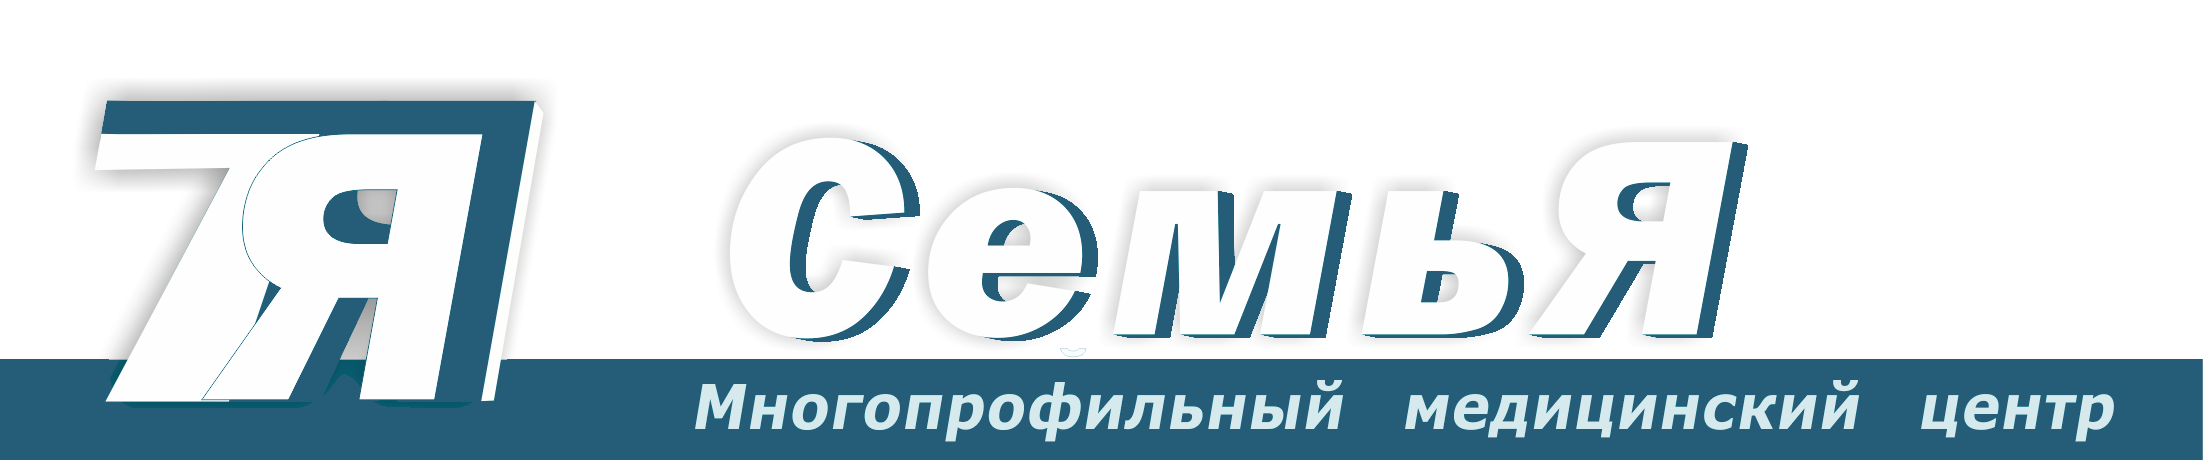 Медицинский Центр Семья, Иркутск